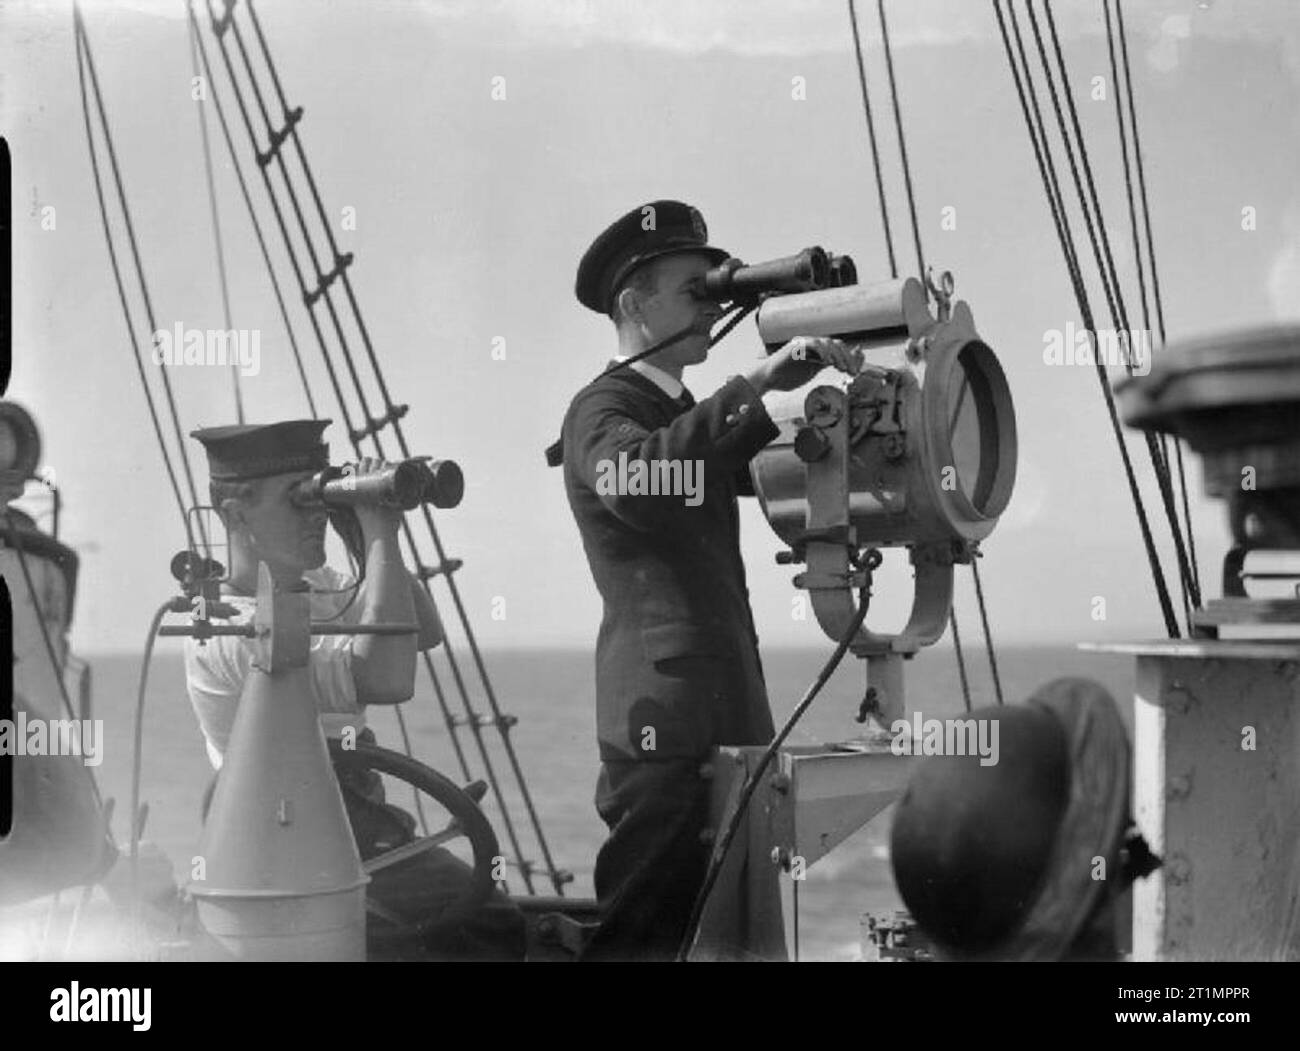 Die Royal Navy während des Zweiten Weltkrieges durch ein Fernglas, einem Mitglied der Schiffsbesatzung ist ein Signal für eine Verfolgung Schiff mit einer Signalleuchte an Bord der HMS brach während Sie auf See ist. Stockfoto